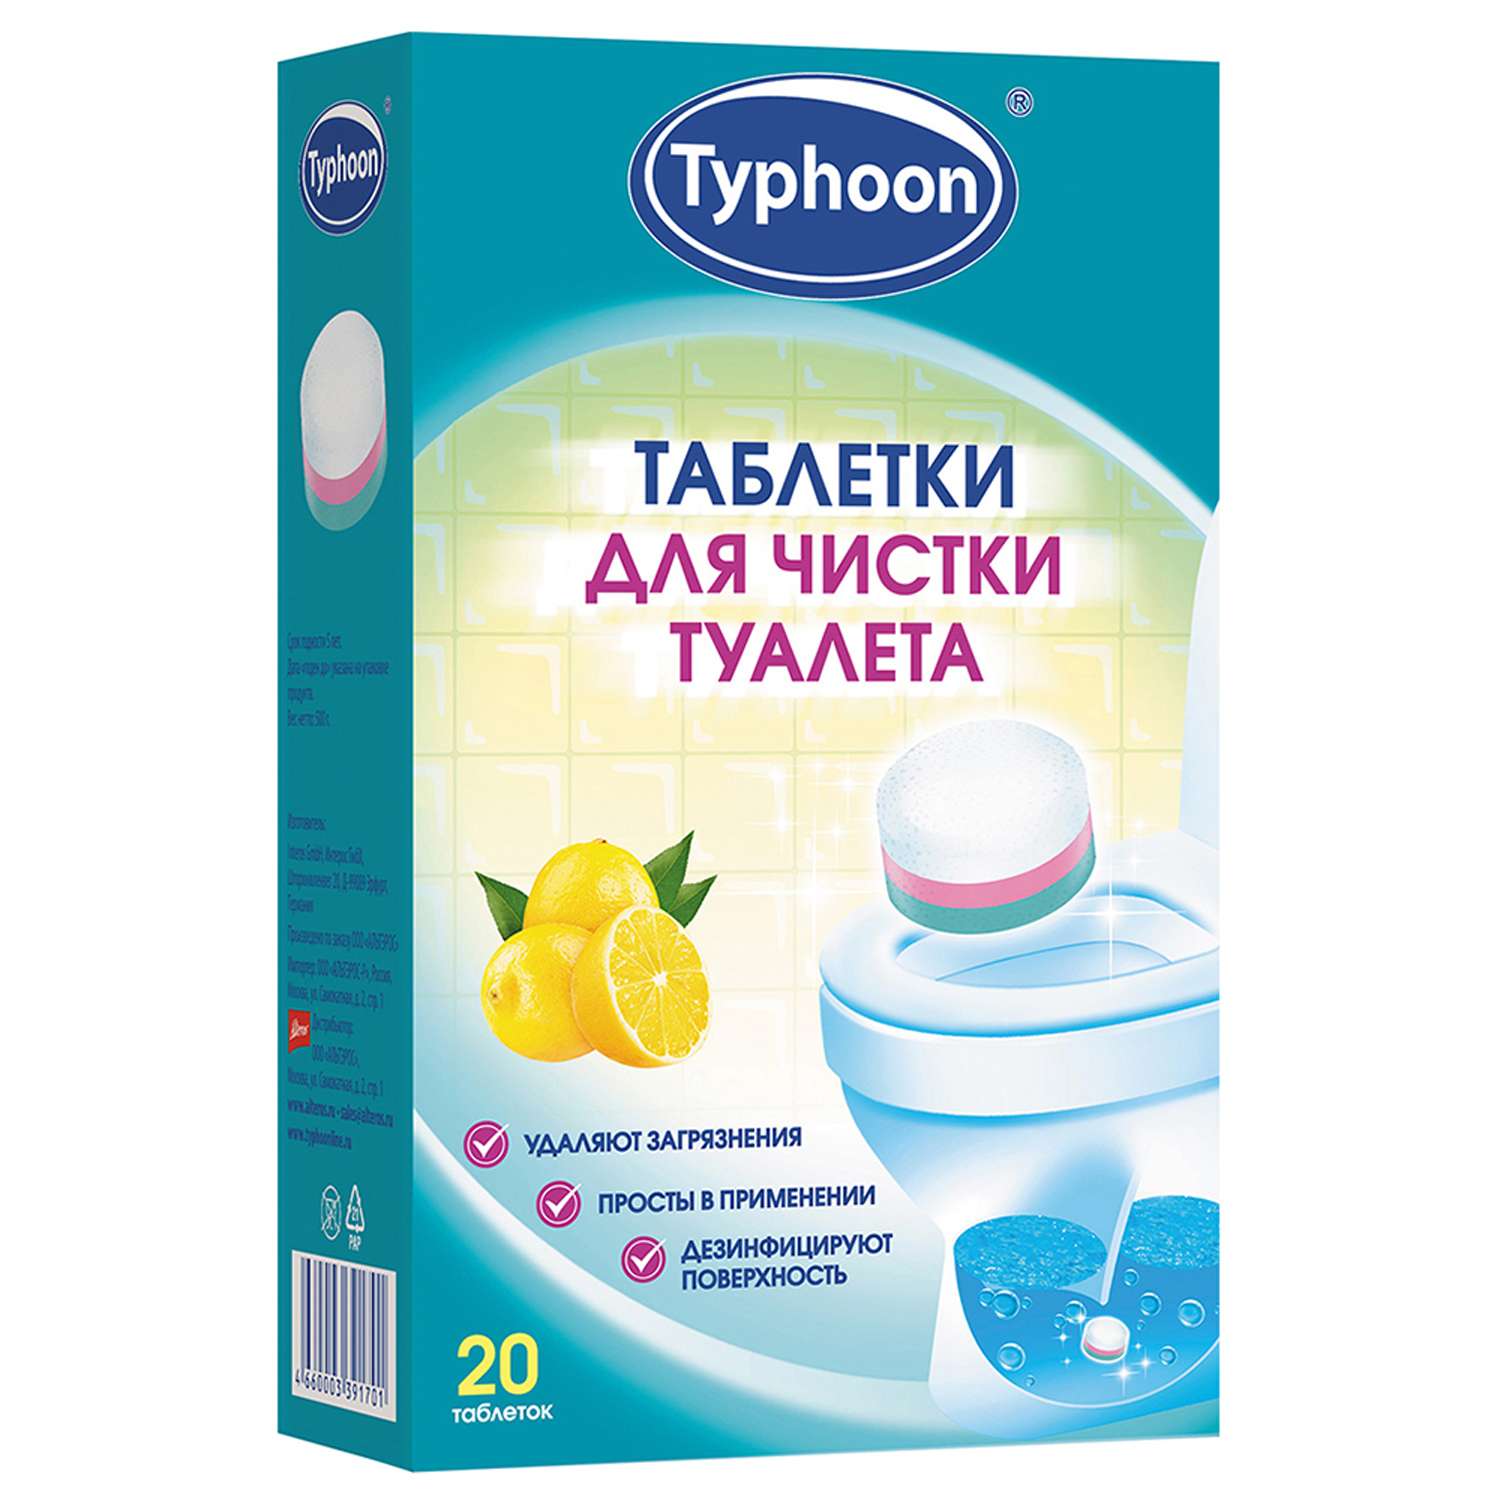 Таблетки для чистки туалета Typhoon 20 шт - фото 1